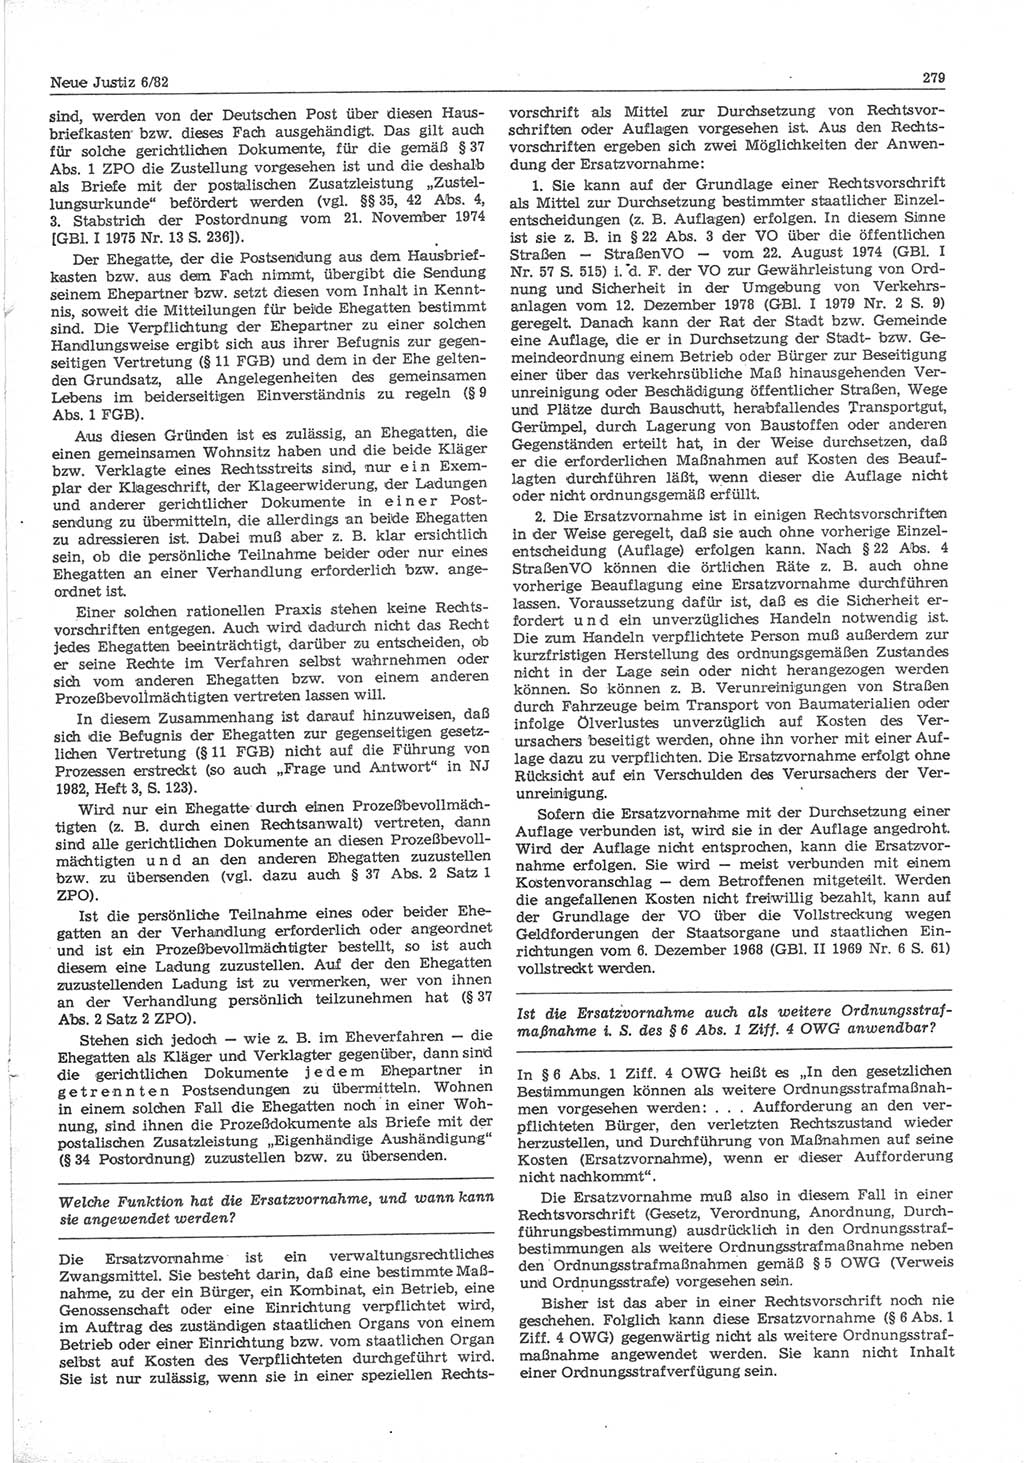 Neue Justiz (NJ), Zeitschrift für sozialistisches Recht und Gesetzlichkeit [Deutsche Demokratische Republik (DDR)], 36. Jahrgang 1982, Seite 279 (NJ DDR 1982, S. 279)